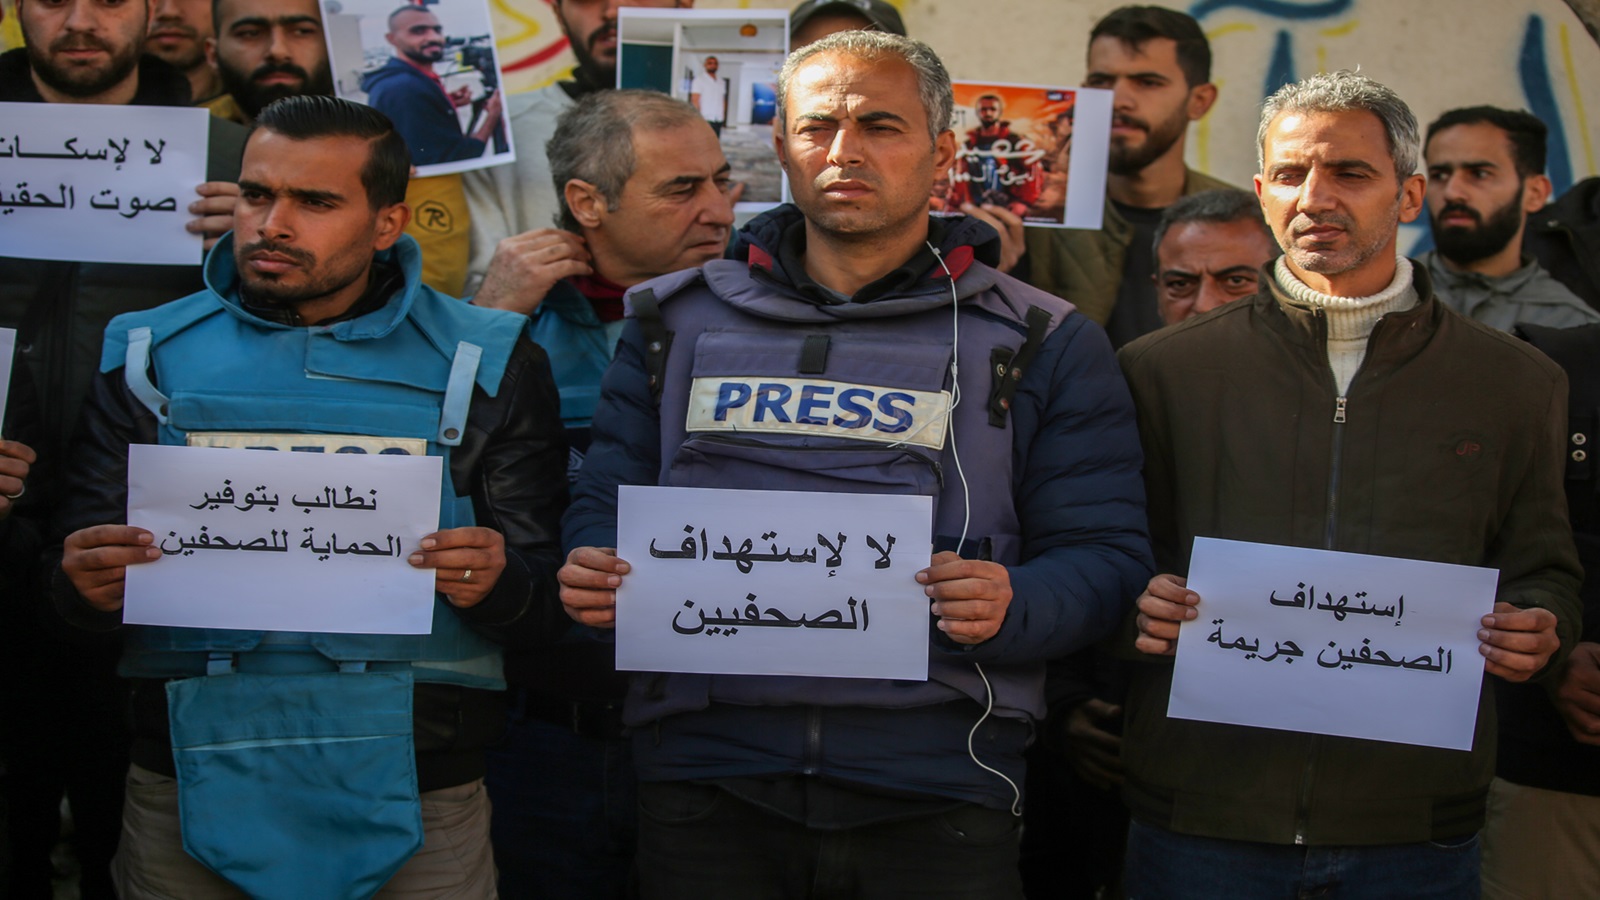 "لجنة حماية الصحافيين" تطالب بدخول المراسلين الأجانب إلى غزة